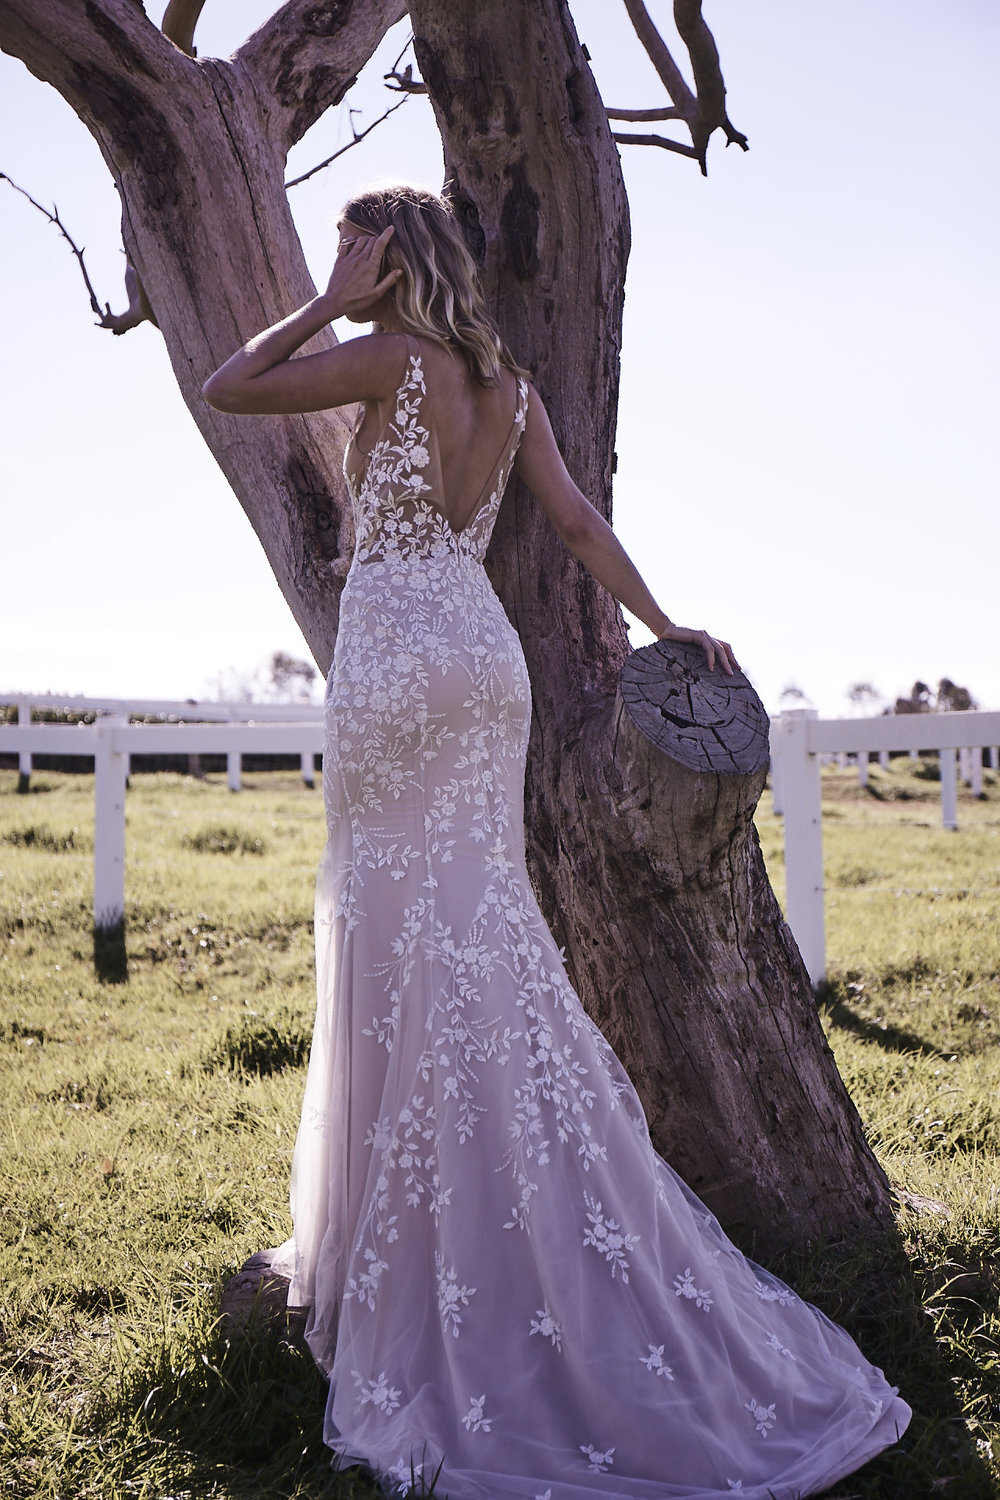 Harper+lace+dress+removable+tulle+overskirt+wedding+dress+sydney+couture+designer+08_66965.jpeg